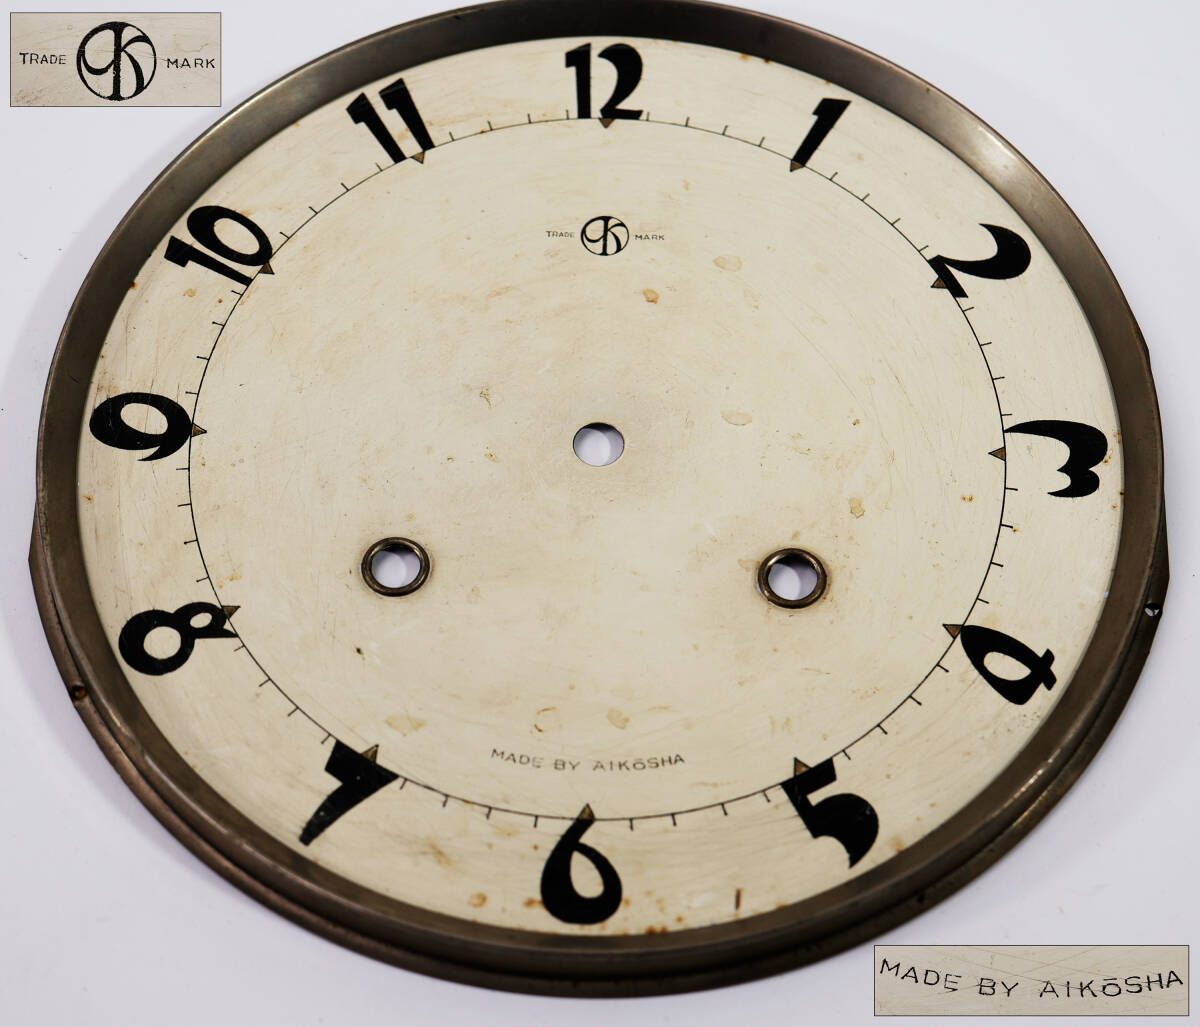 柱時計の文字盤 まとめて6枚 古い時計部品 愛工舎/TRADE MARS MARK/KOWA/地球鳩印 アンティーク ディスプレイ インテリア アート_画像2